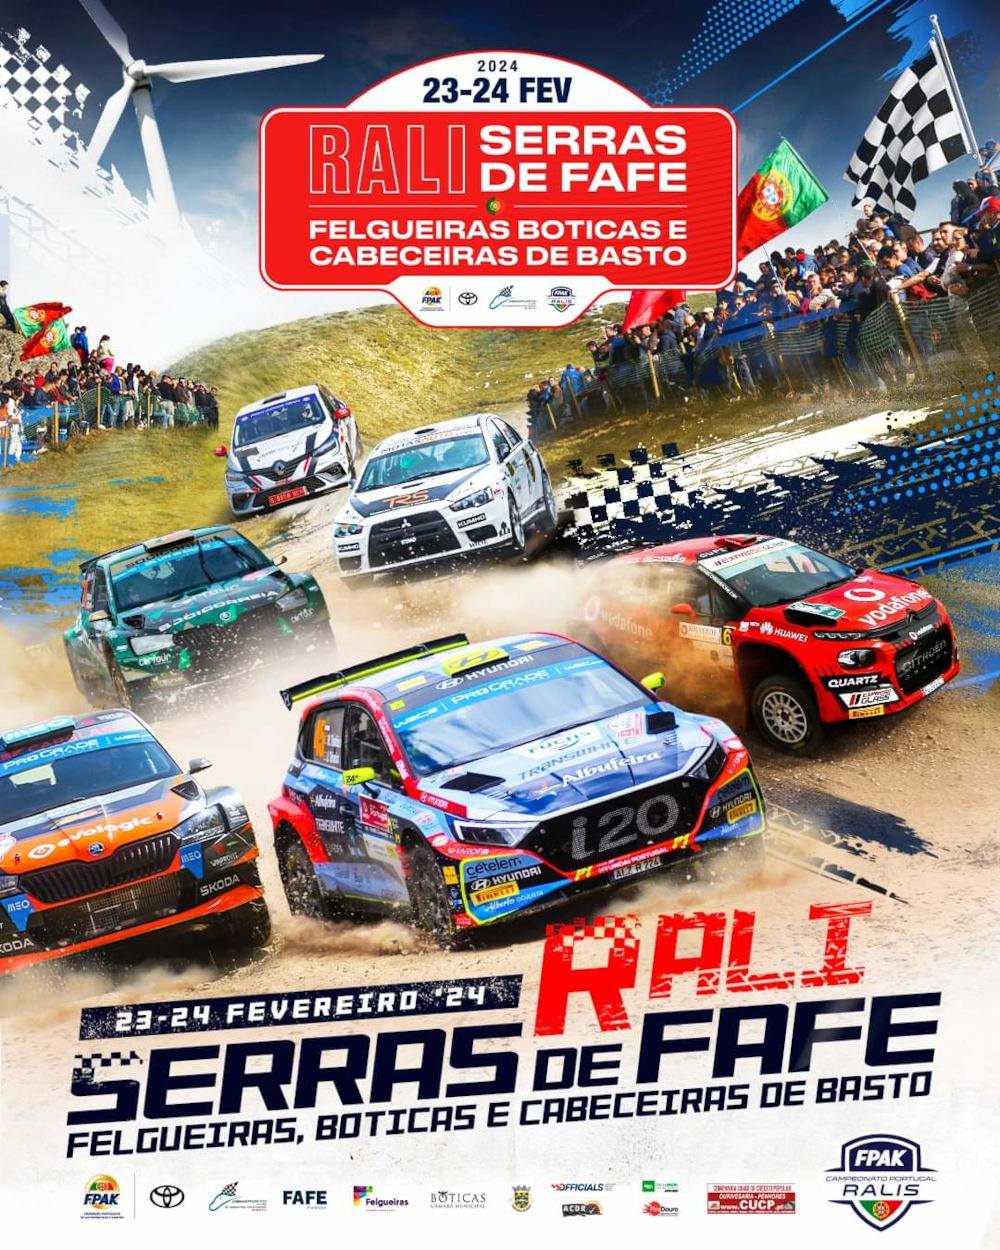 Rally Serras de Fafe